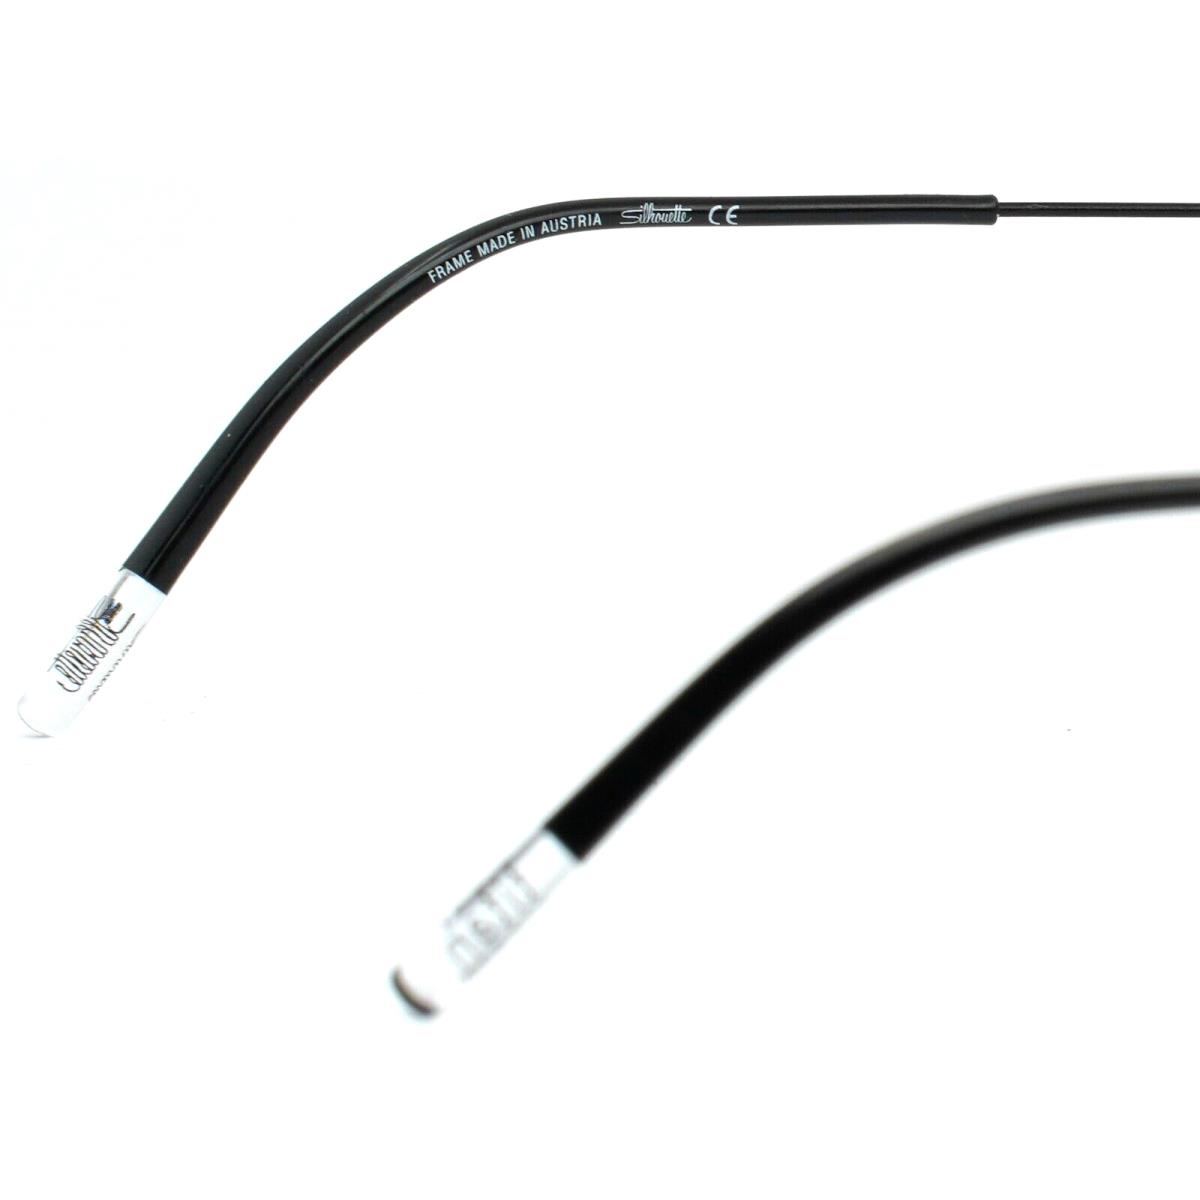 Silhouette eyeglasses  - Black Frame